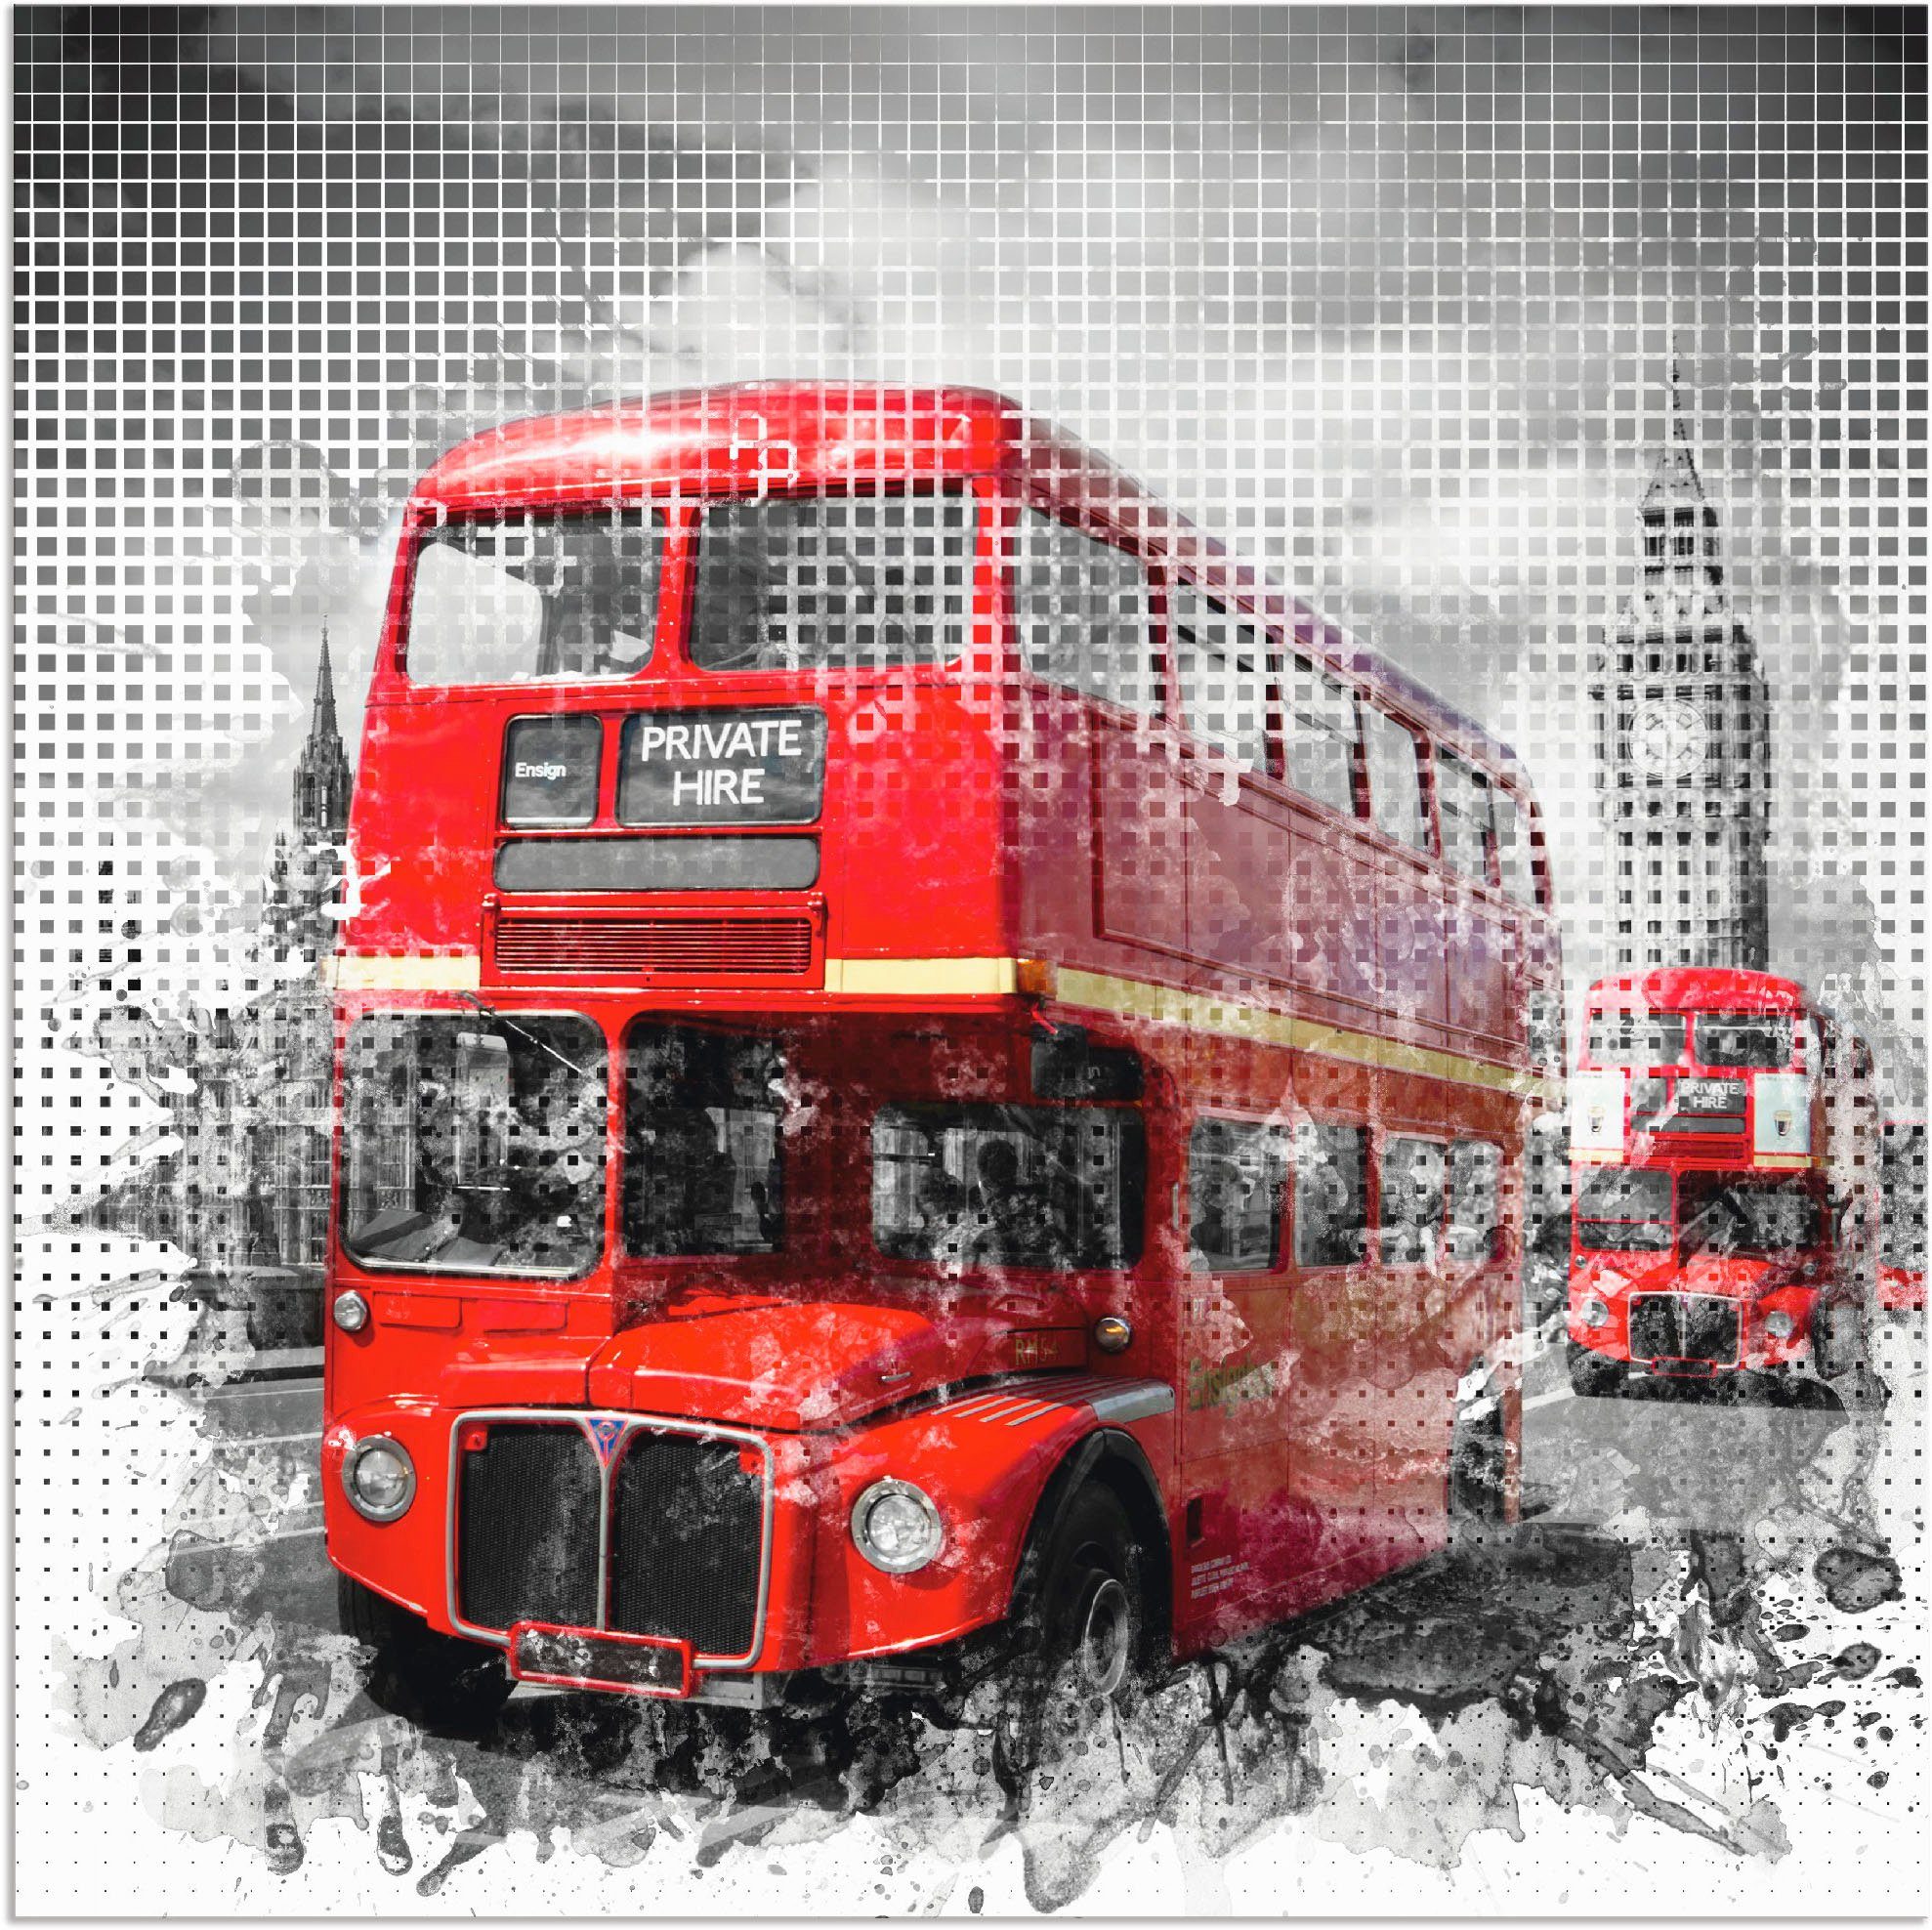 Artland Artprint Londen Westminster rode bussen in vele afmetingen & productsoorten - artprint van aluminium / artprint voor buiten, artprint op linnen, poster, muursticker / wandf